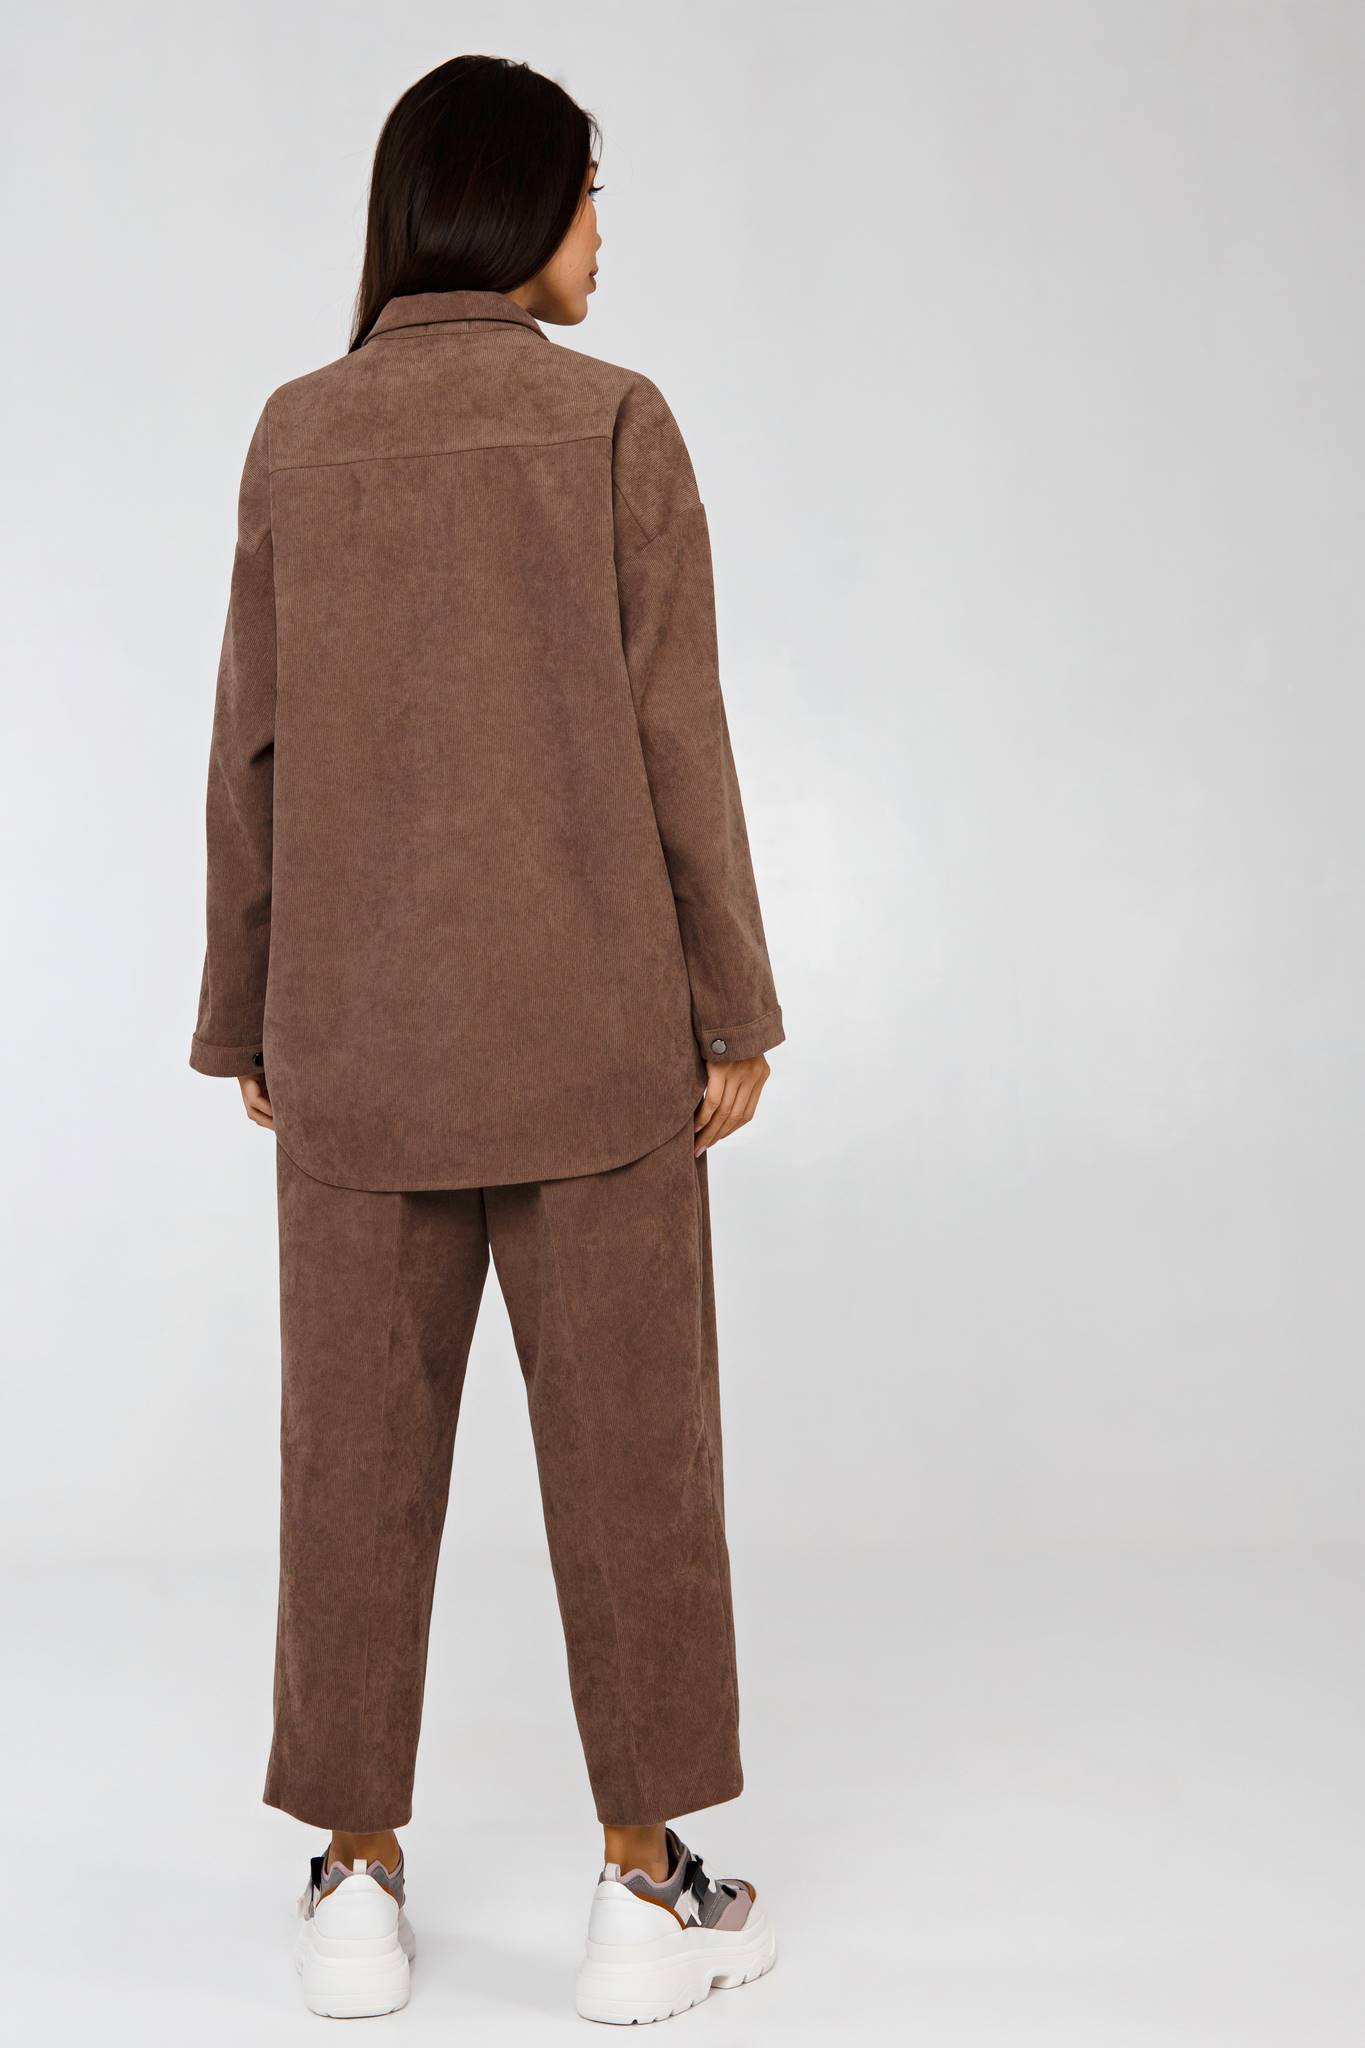 Вельветовый костюм в рубчик коричневый YOS от украинского бренда Your Own Style